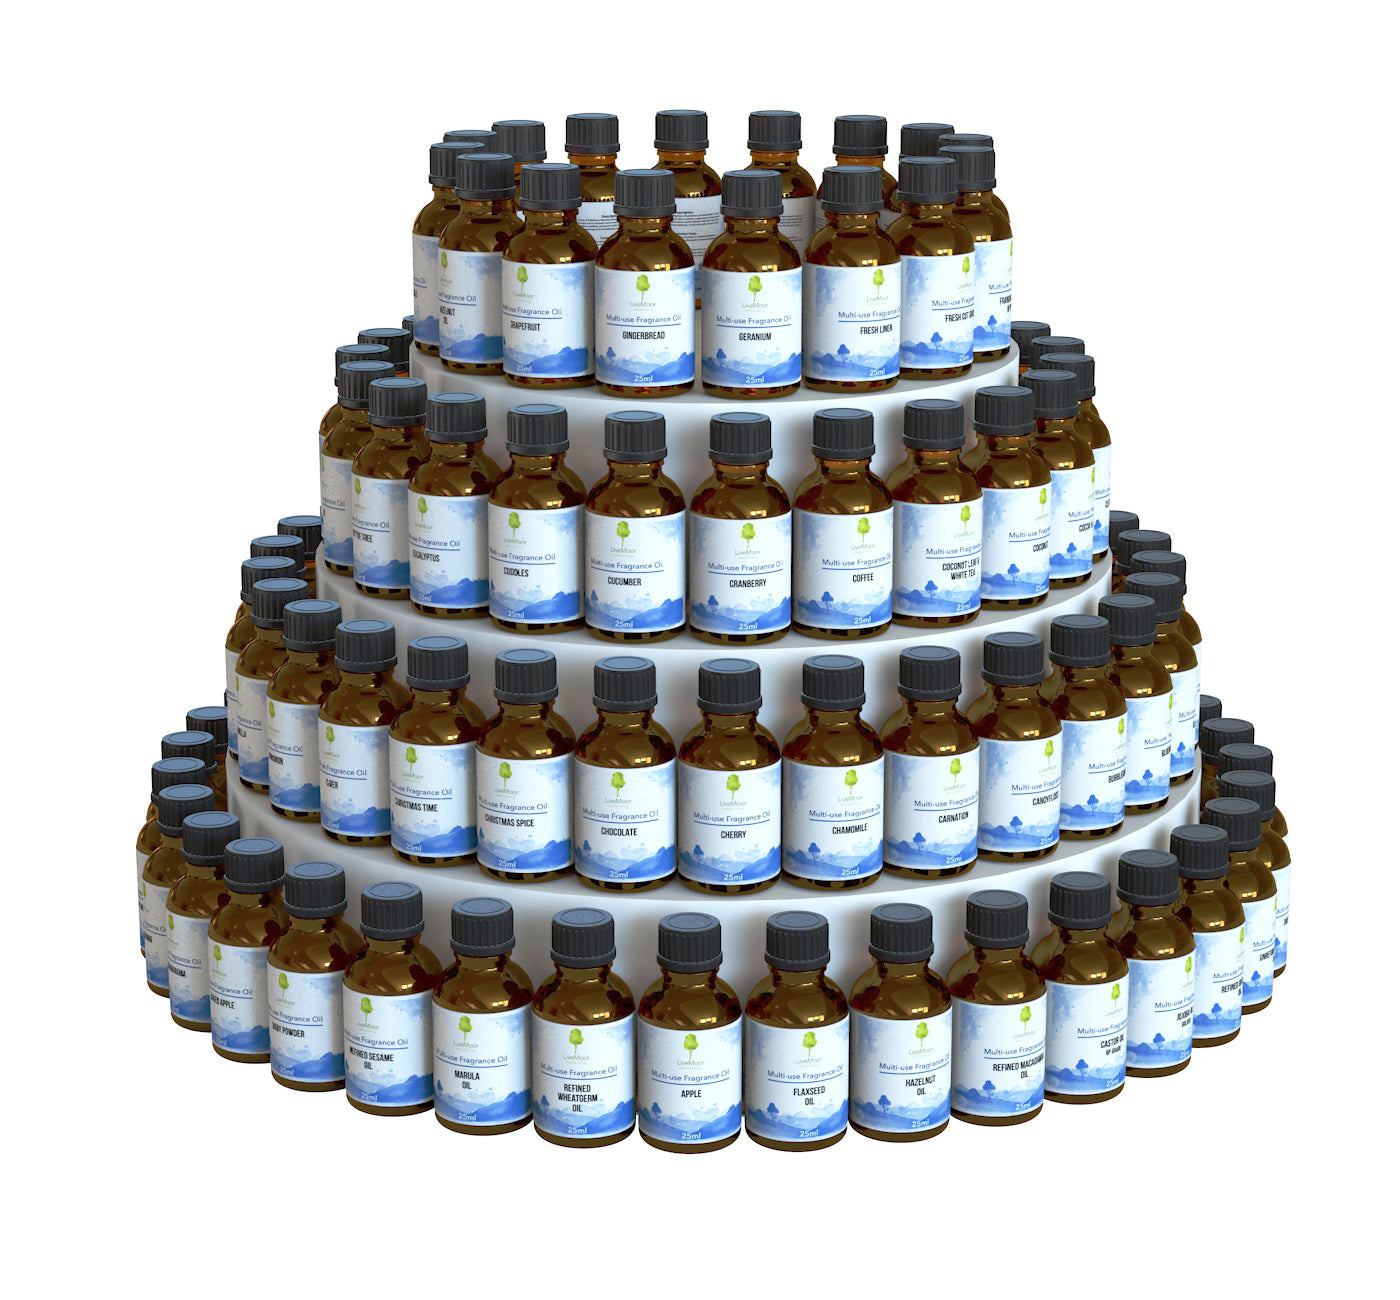 TEMP Varios aceites aromáticos (sin parabenos) - 100 ml a 1 litro - Solo pedido por adelantado